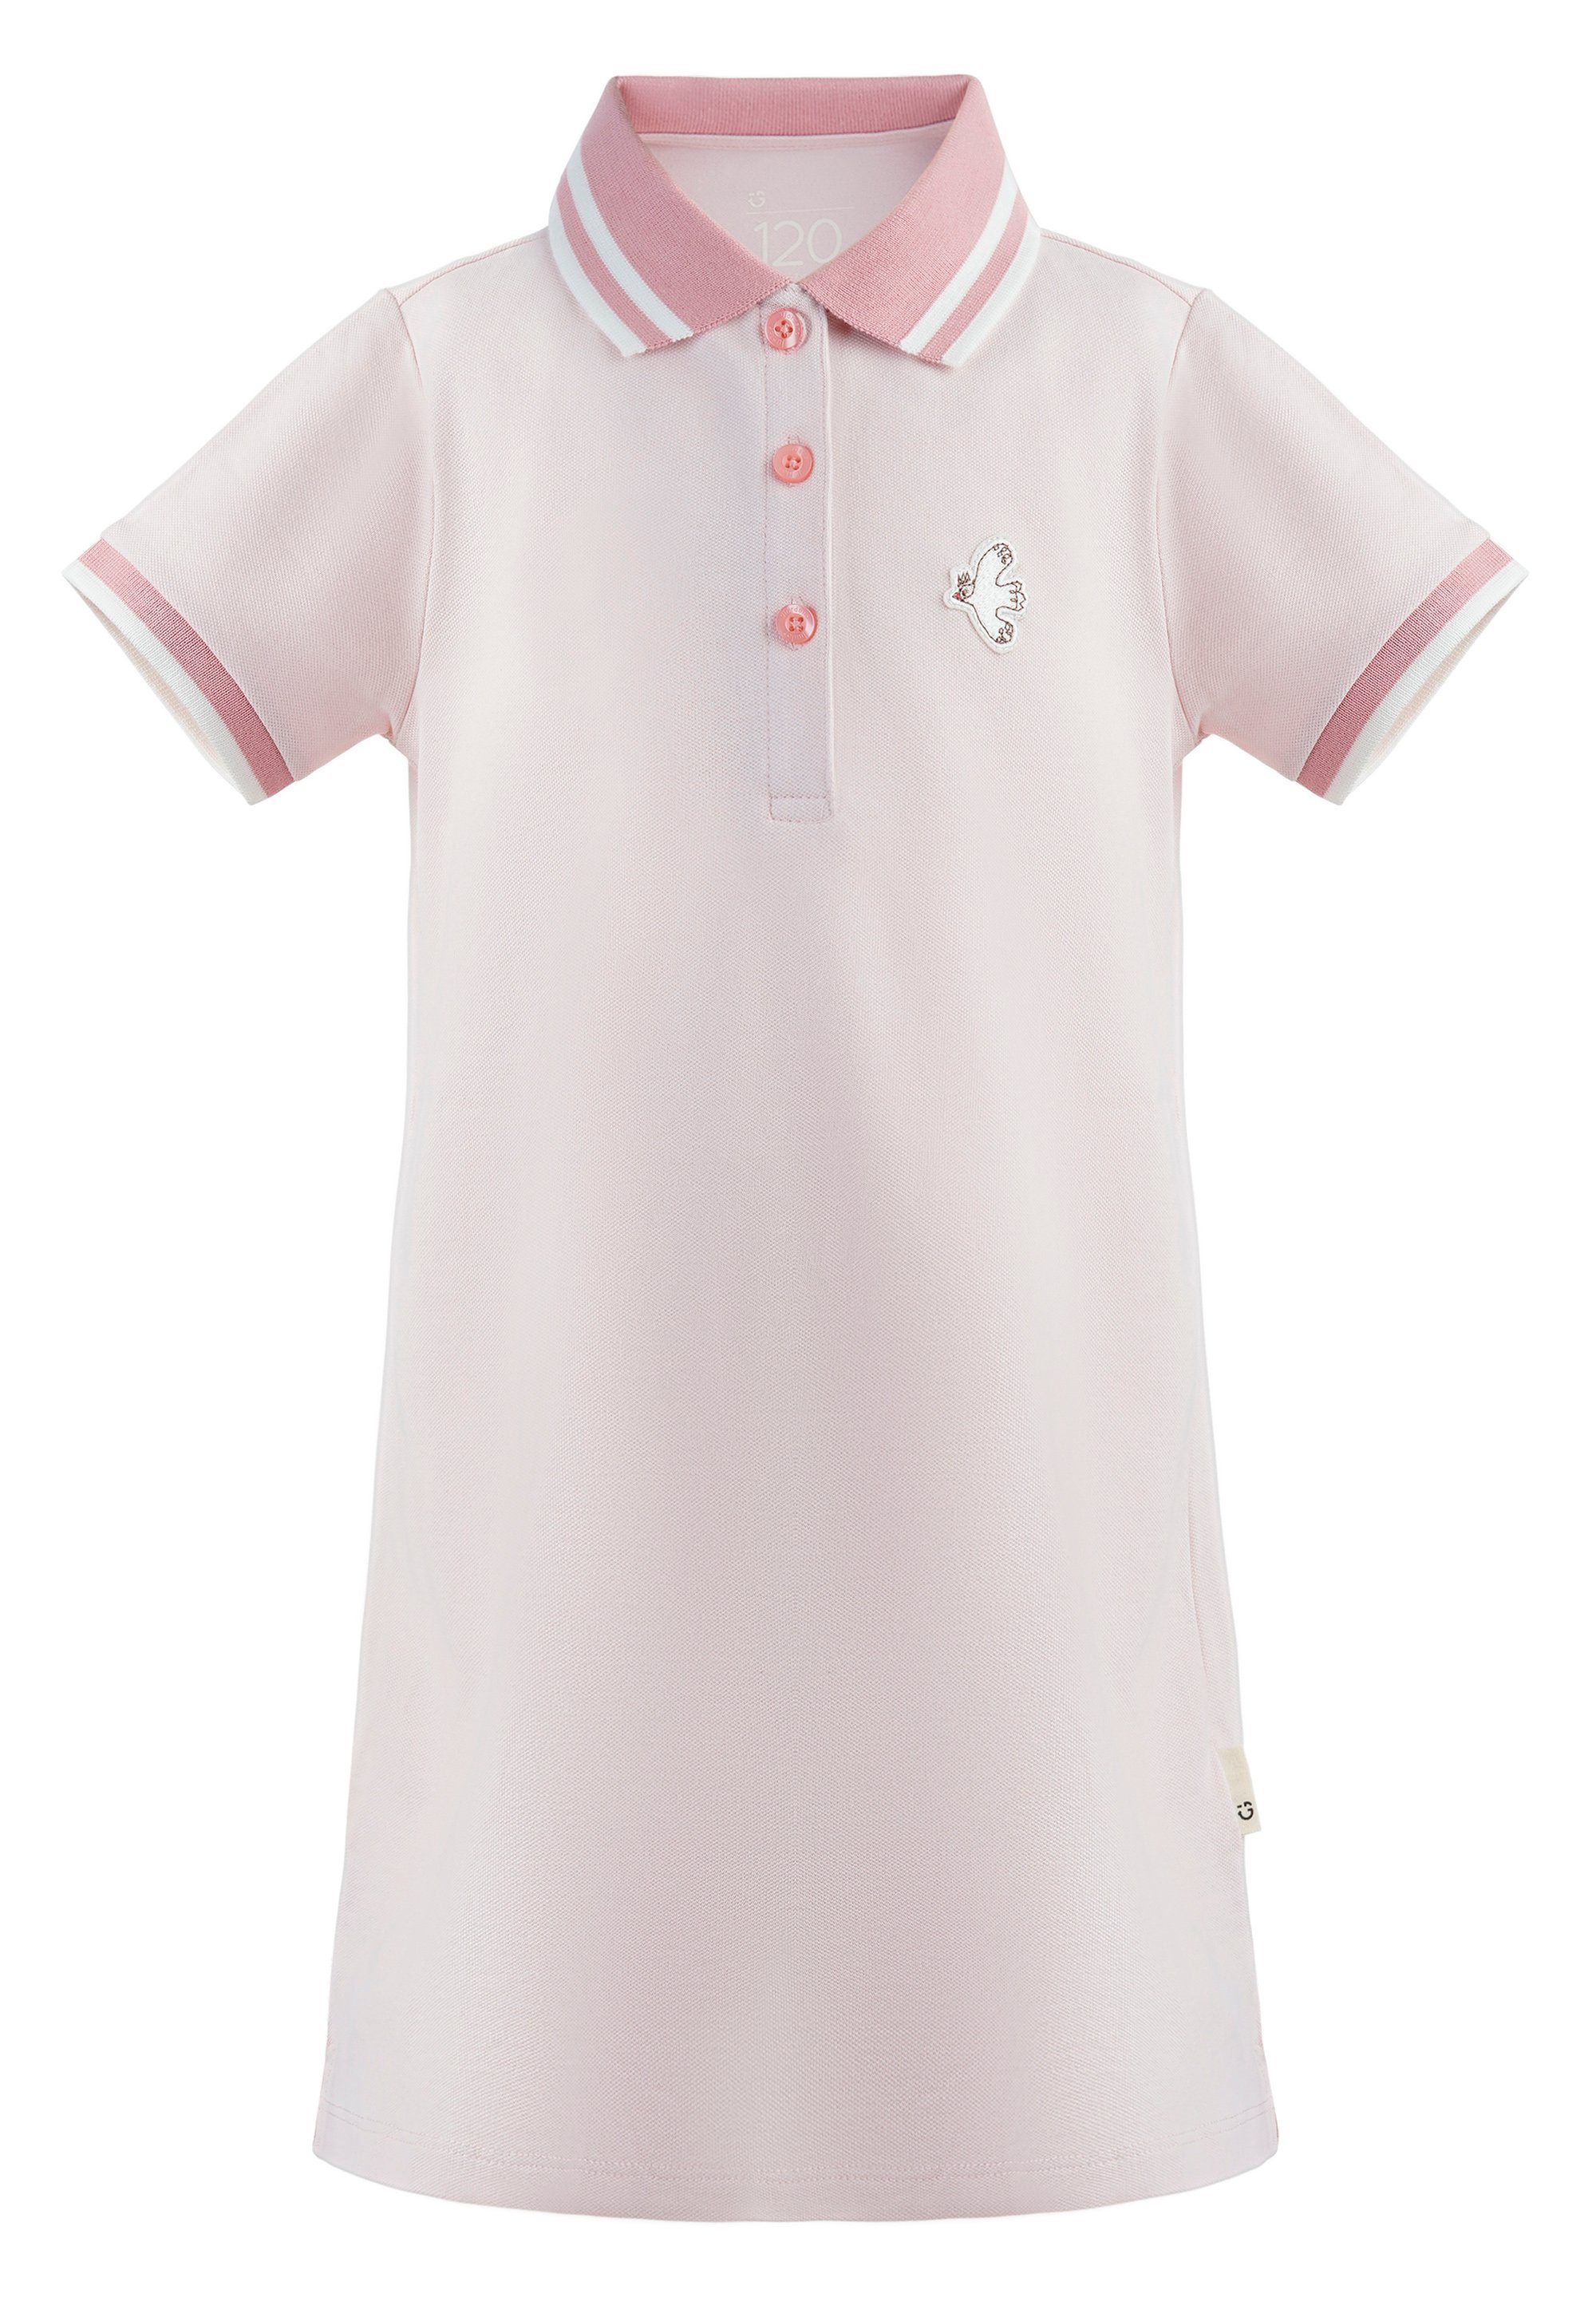 GIORDANO junior Jerseykleid mit Polokragen rosa | Jerseykleider